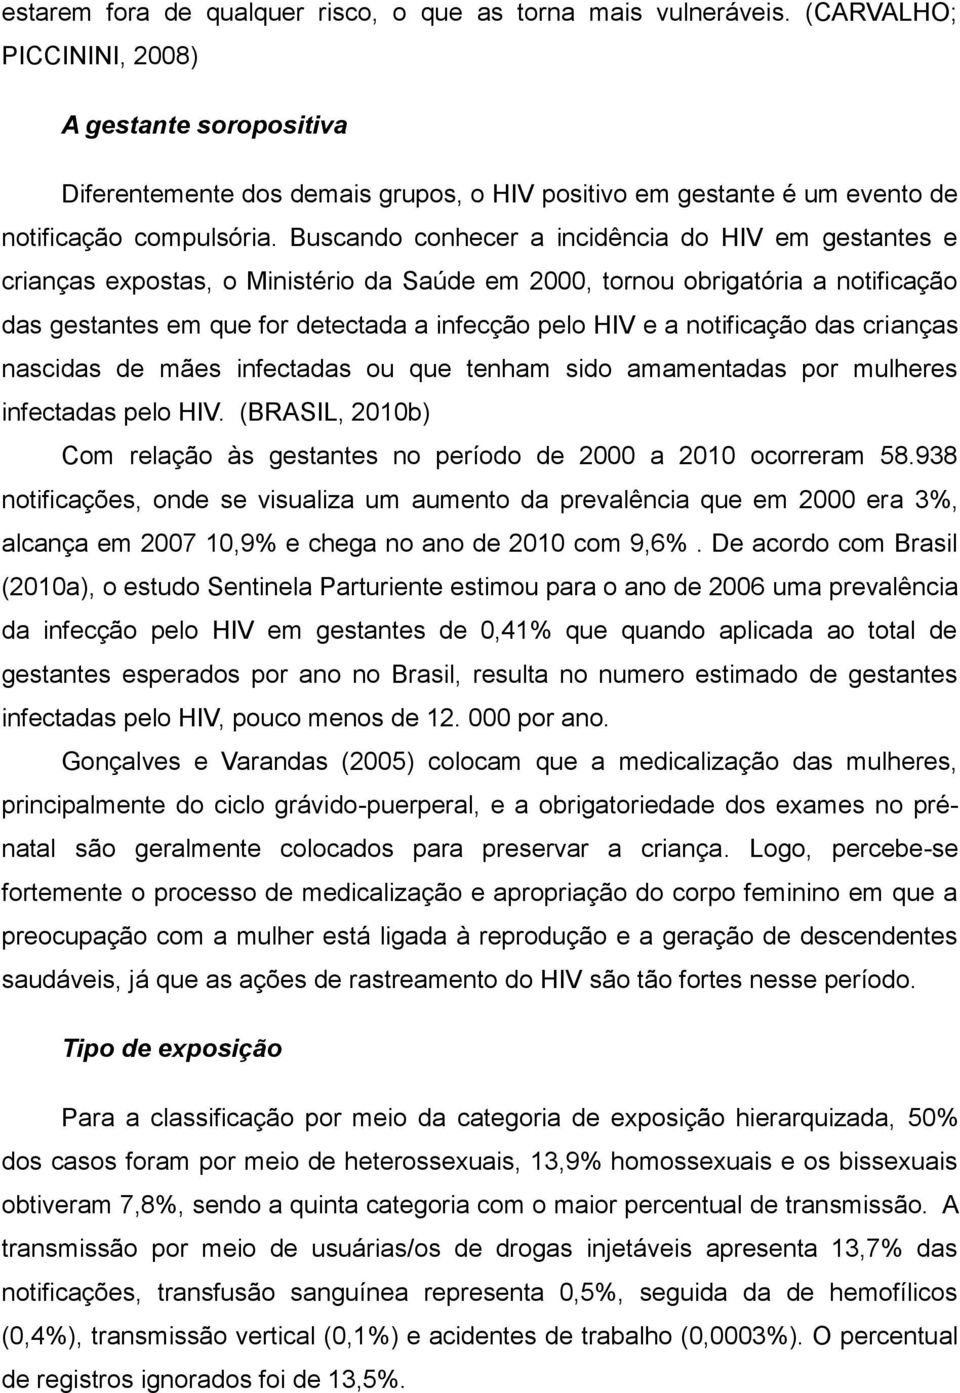 Buscando conhecer a incidência do HIV em gestantes e crianças expostas, o Ministério da Saúde em 2000, tornou obrigatória a notificação das gestantes em que for detectada a infecção pelo HIV e a